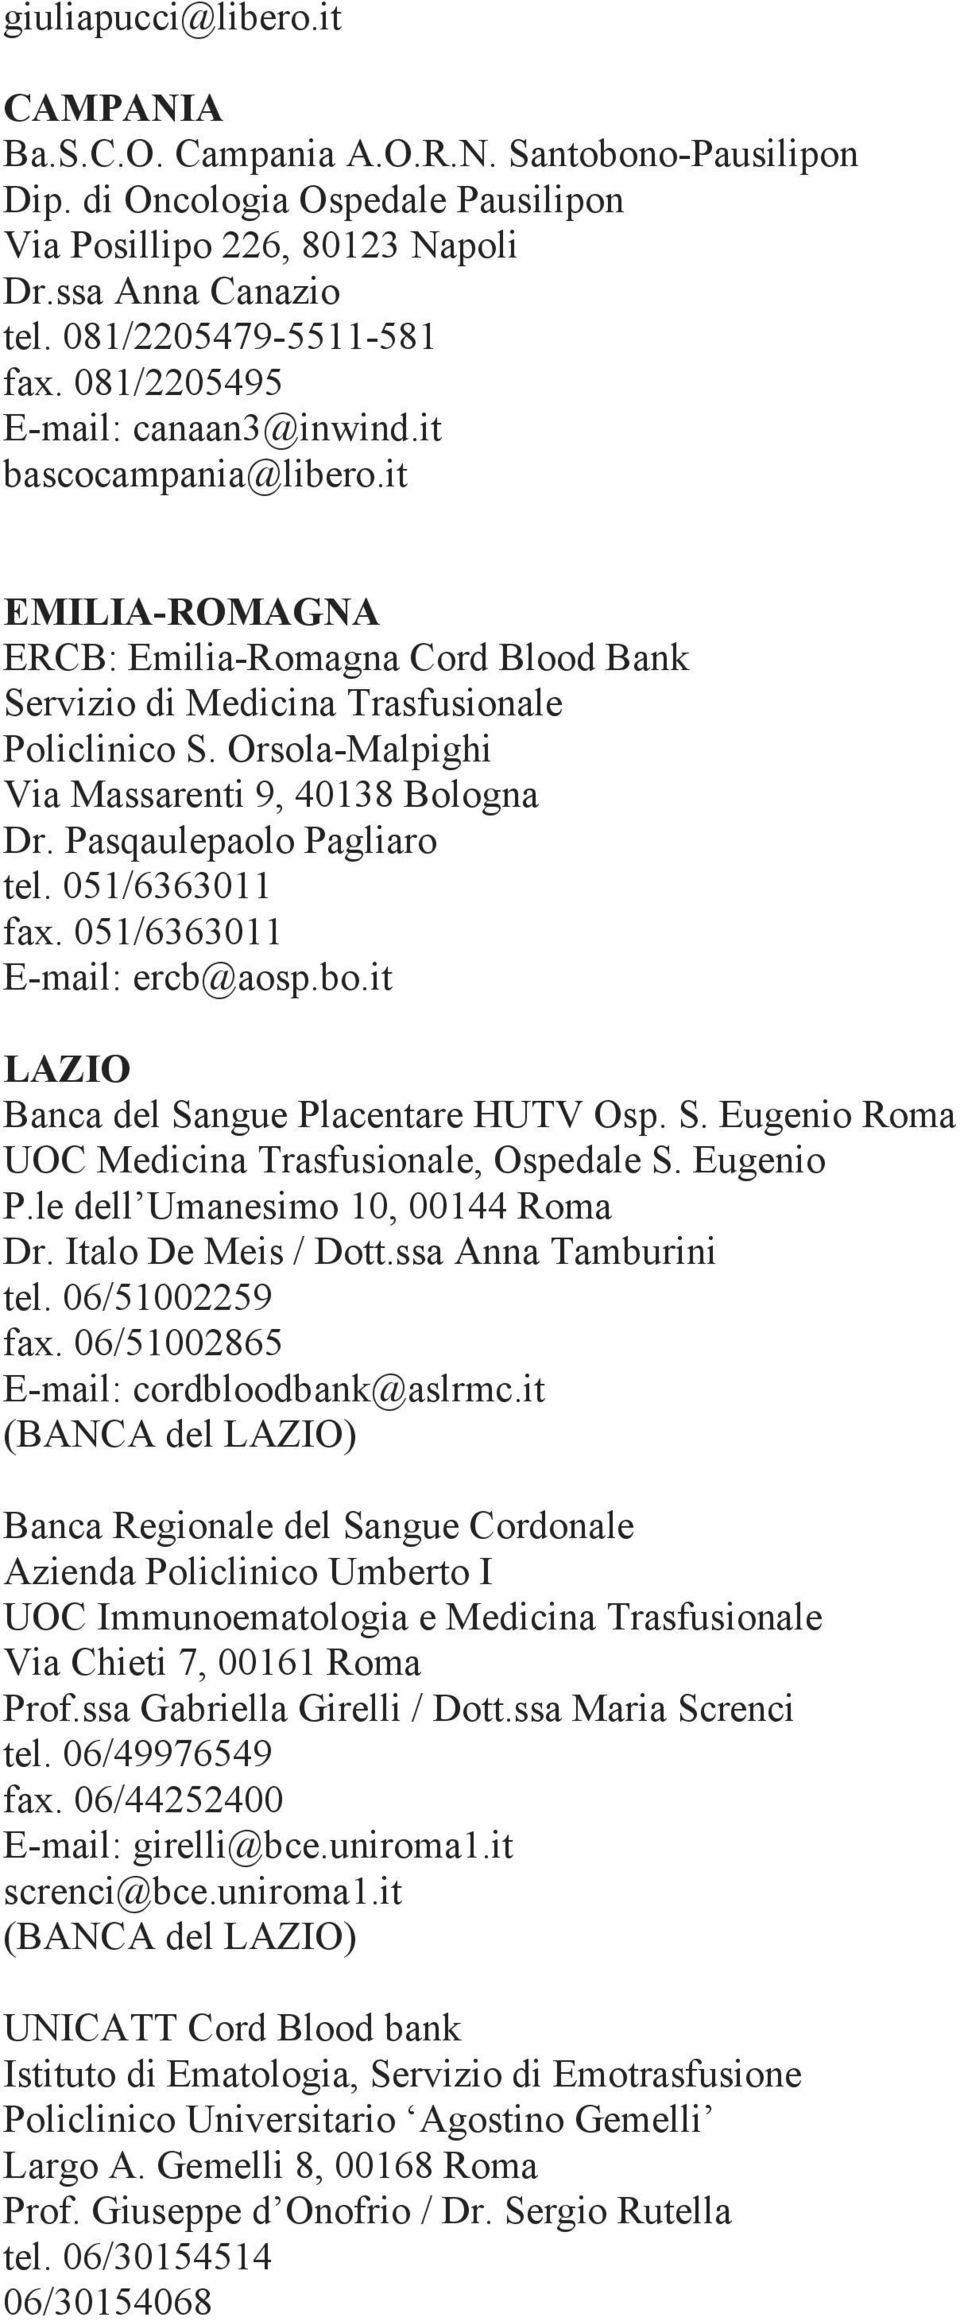 Orsola-Malpighi Via Massarenti 9, 40138 Bologna Dr. Pasqaulepaolo Pagliaro tel. 051/6363011 fax. 051/6363011 E-mail: ercb@aosp.bo.it LAZIO Banca del Sa